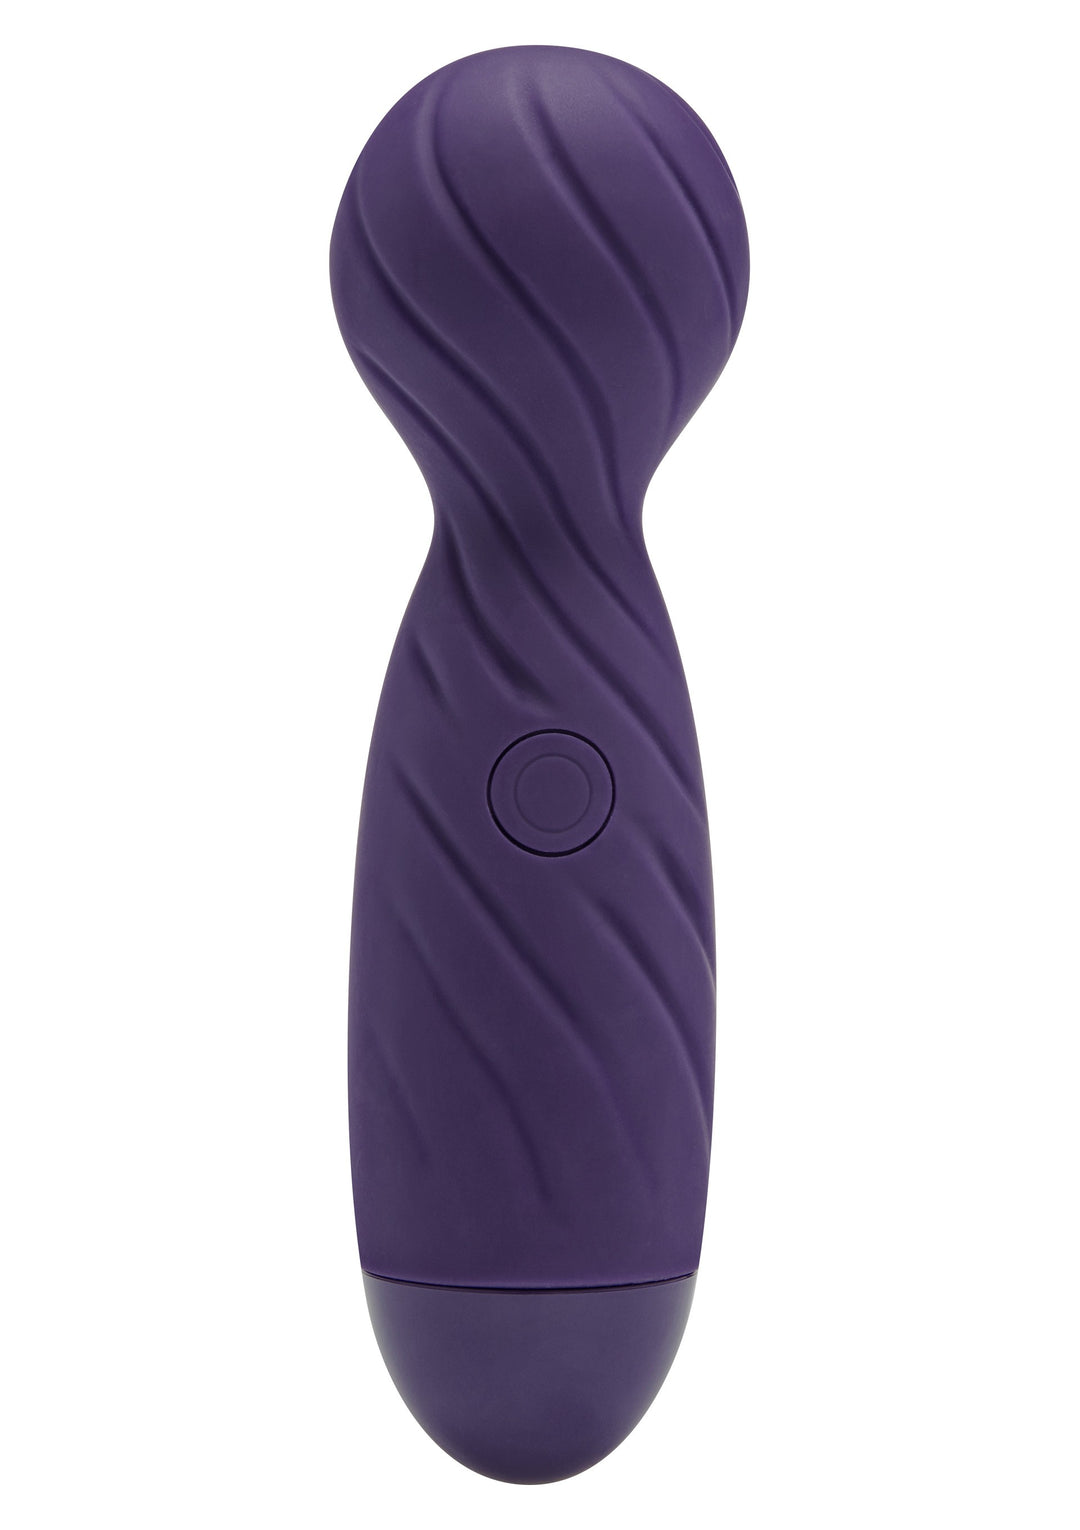 Stimolatore vaginale clitoride wand vibratore in silicone massaggiatore donna